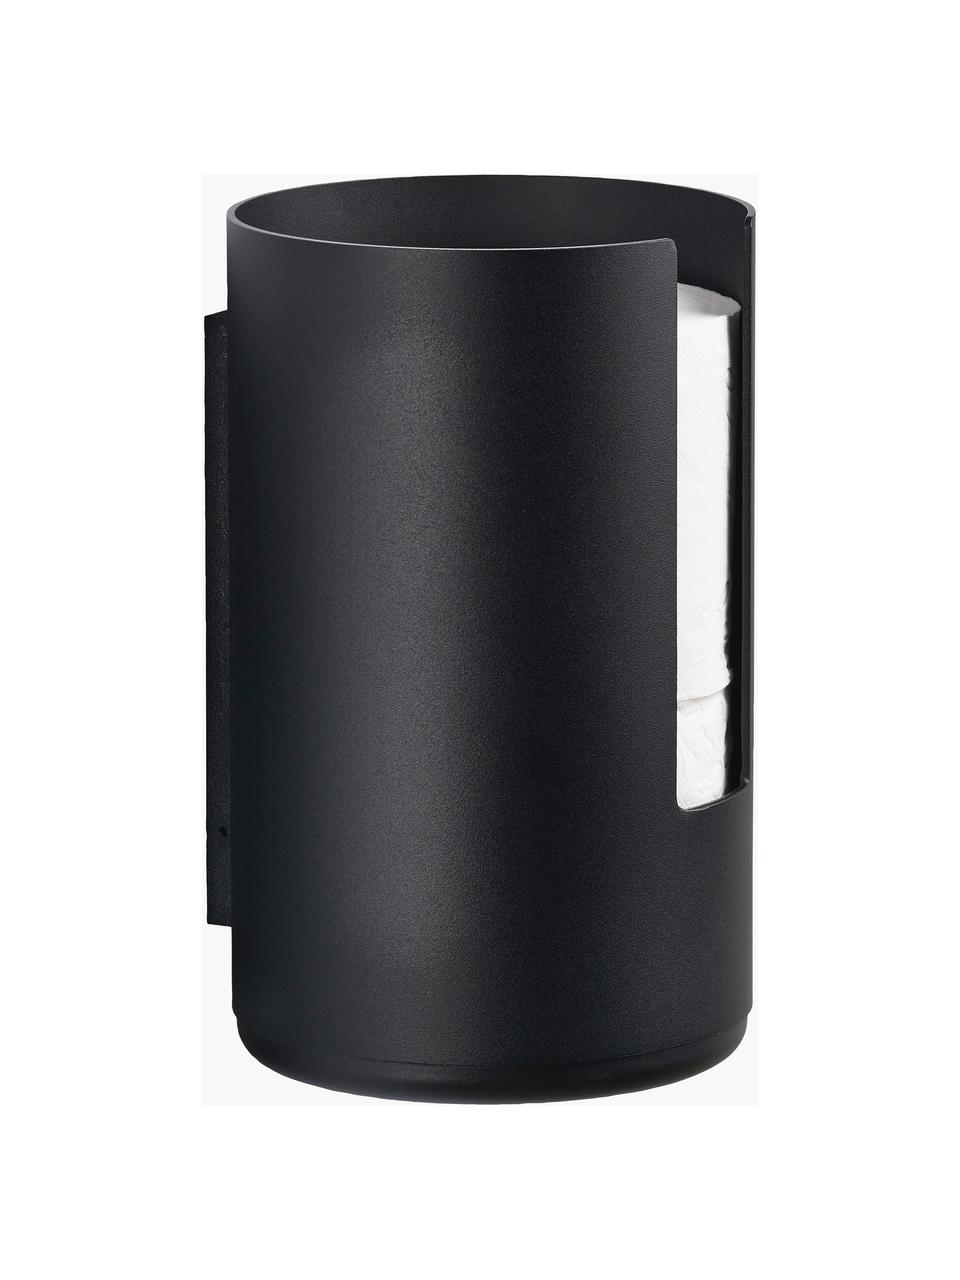 WC-papierhouder Rim van metaal voor wandbevestiging, Gecoat aluminium, Zwart, H 22 cm